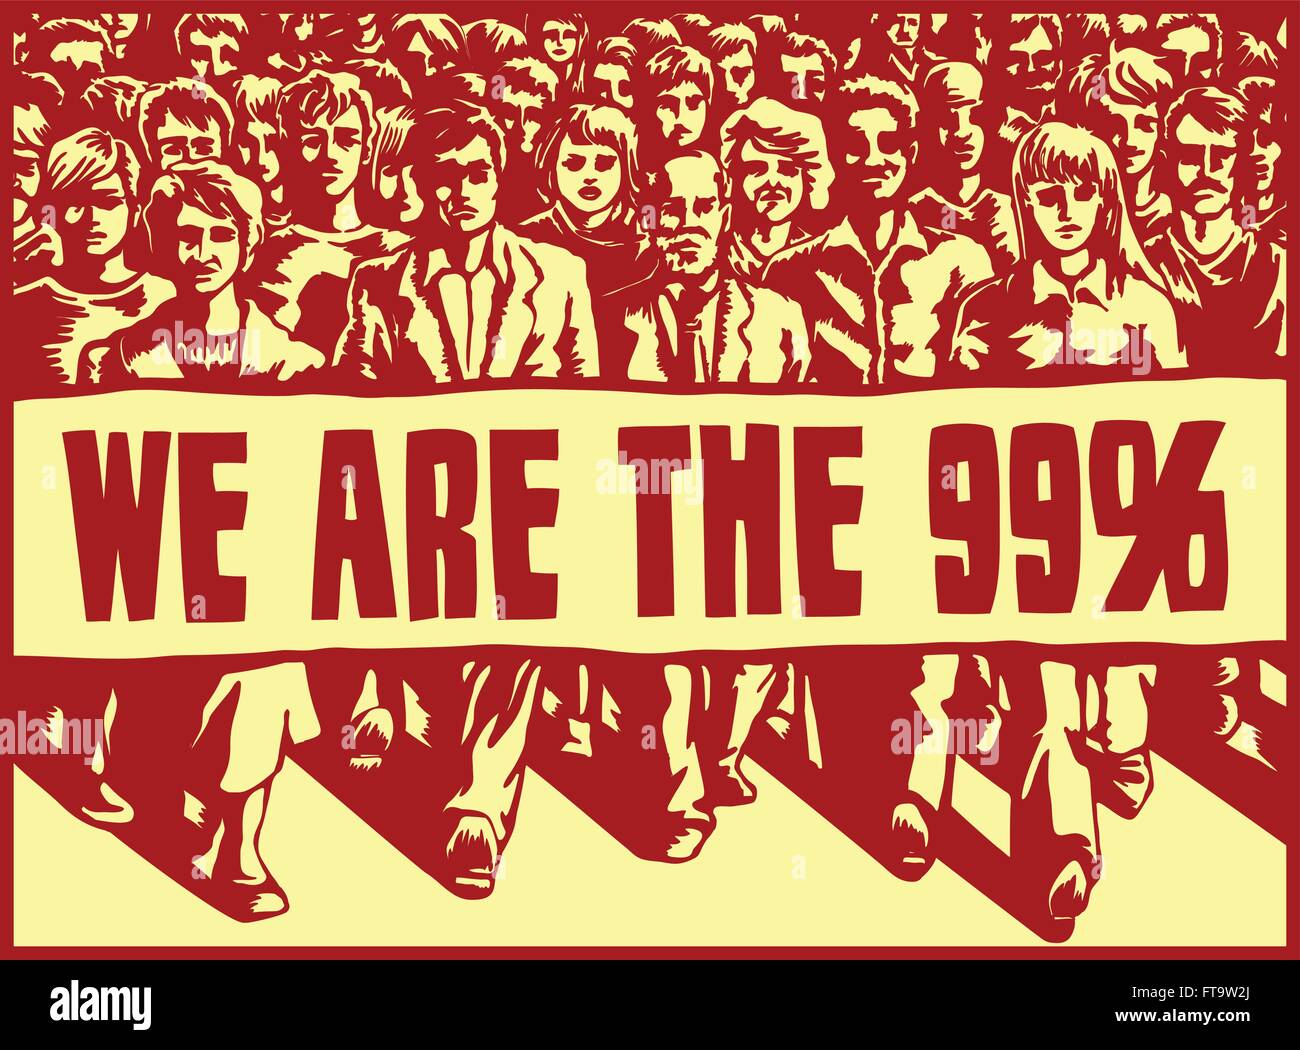 Wütender Mob marschiert mit politischen Protest Zeichen-Vektor-Illustration, occupy-Bewegung, wir sind die 99 %, Kapitalismus, Ungerechtigkeit Stock Vektor